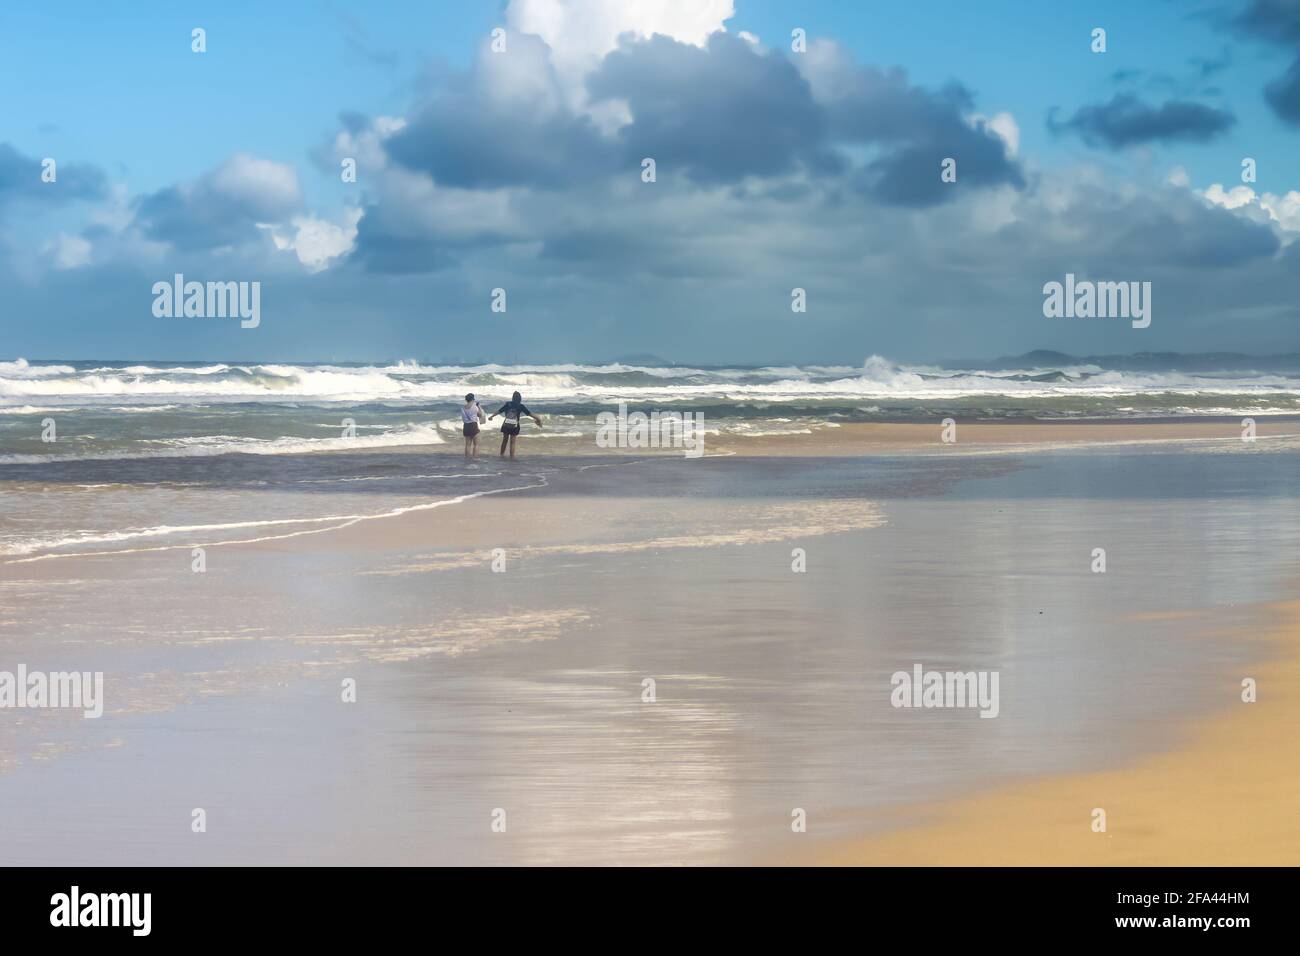 Deux femmes touristes - une avec les bras débordés aiment se tenir dehors sur la plage humide sous le ciel orageux avec l'océan turbulent dedans arrière-plan Banque D'Images